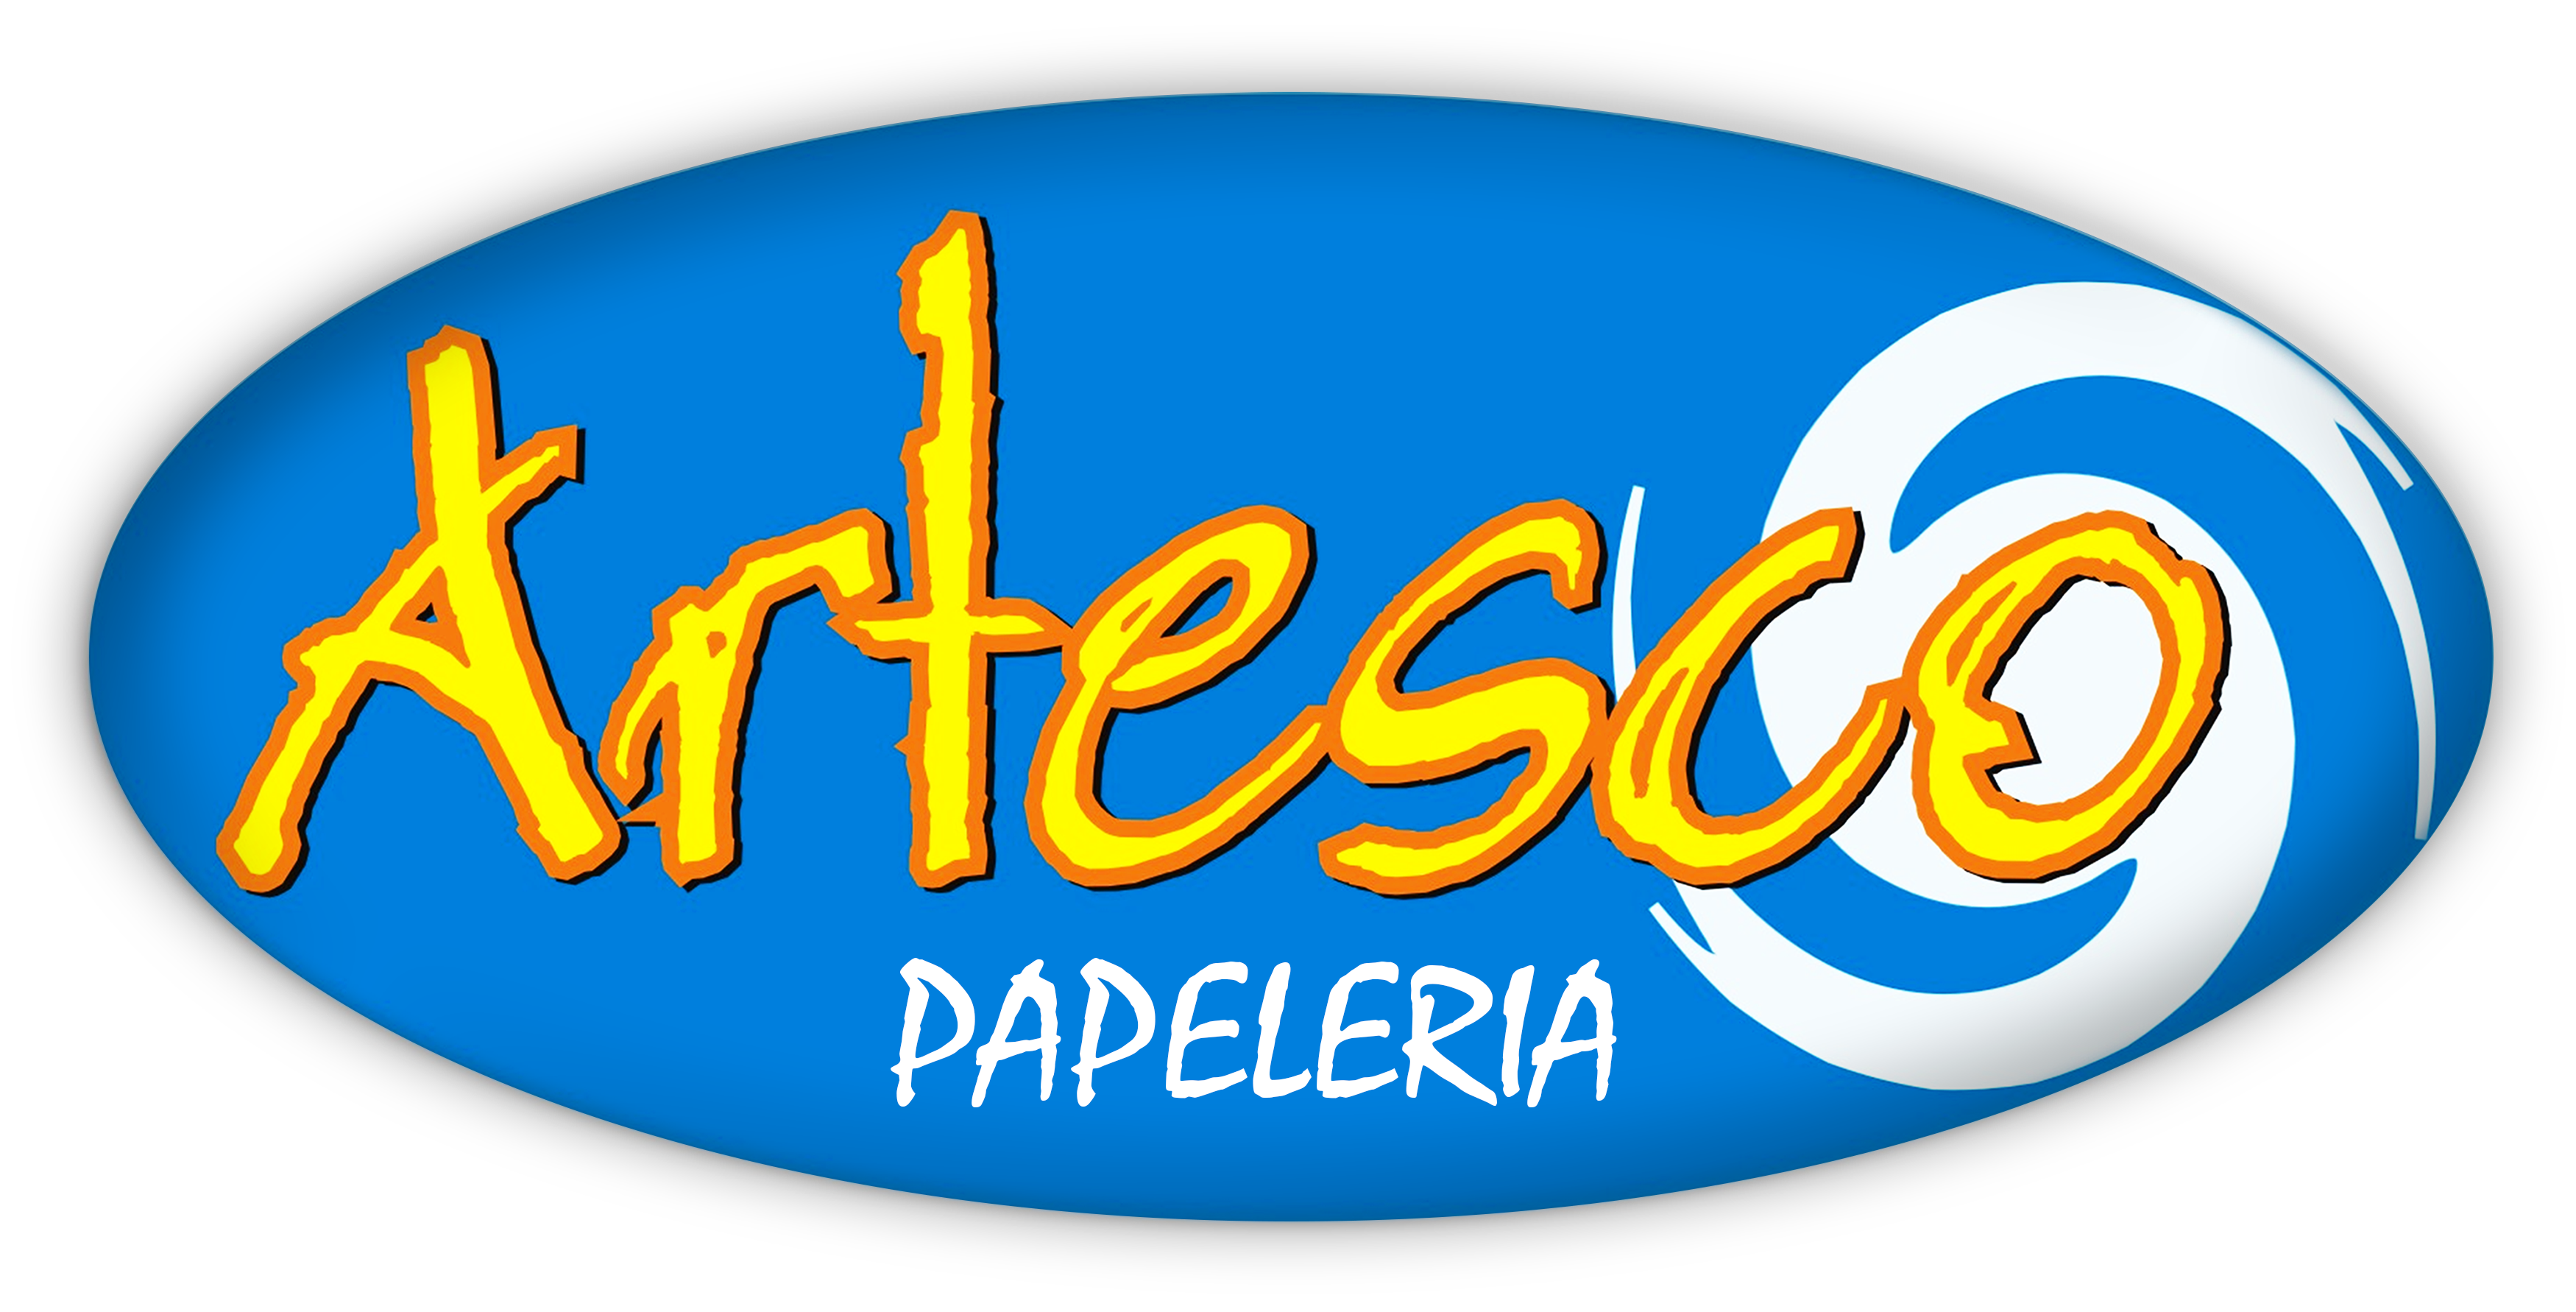 ARTESCO PAPELERIA